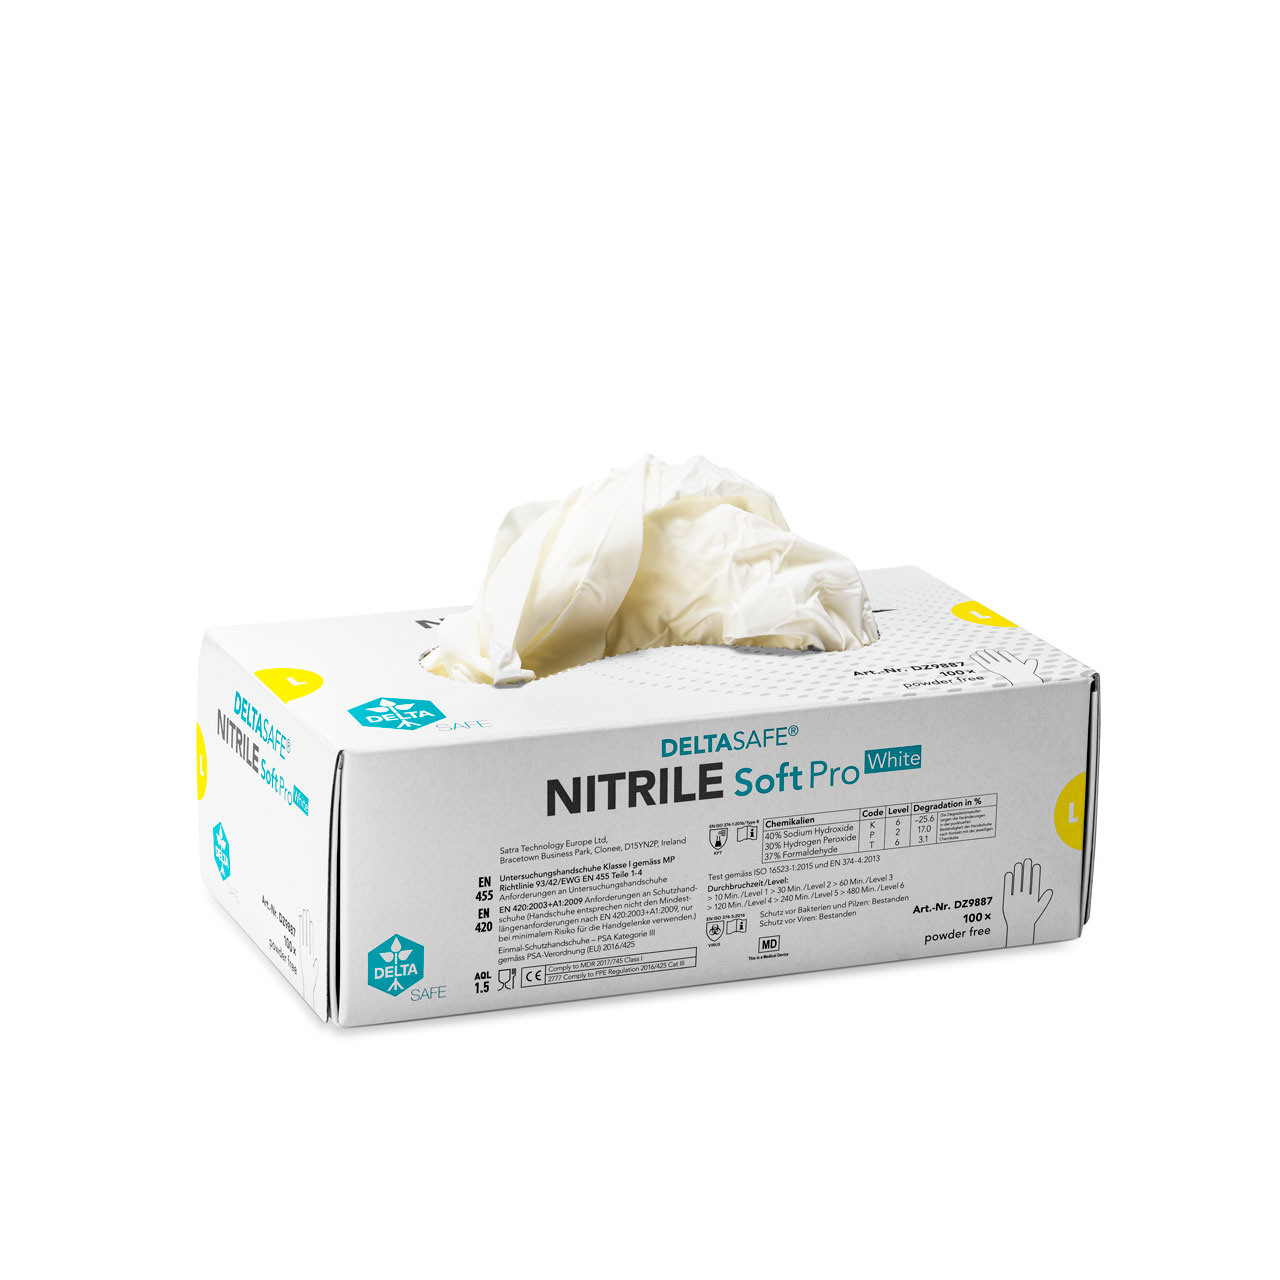 DELTASAFE® NITRILE Soft Pro White, 240 mm, M